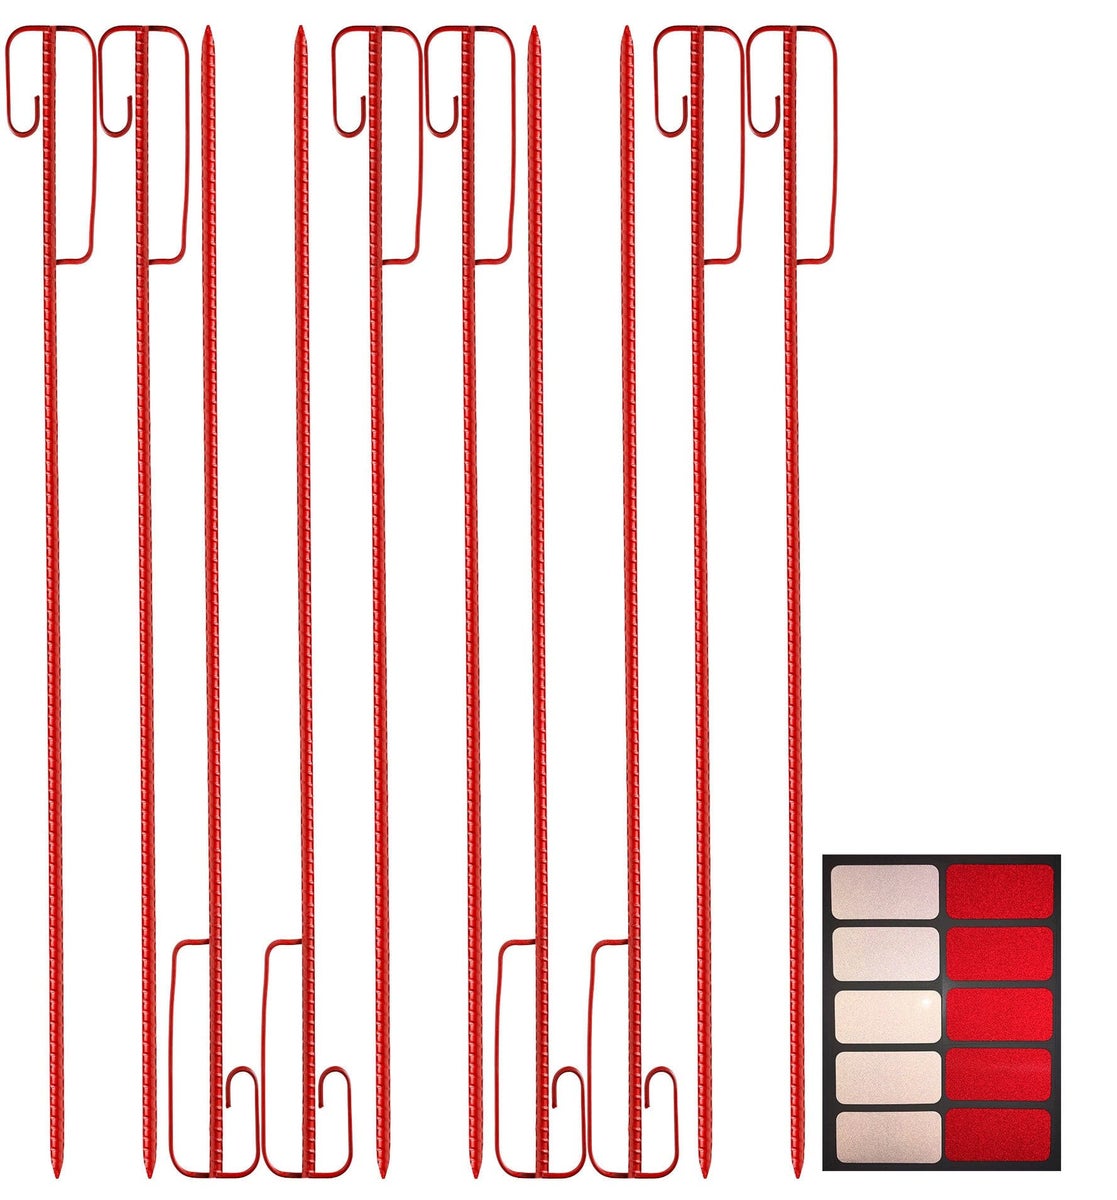 Absperrleinenhalter rot 1200 mm lang + 10 Reflexsticker / Reflexfolie rot/weiß